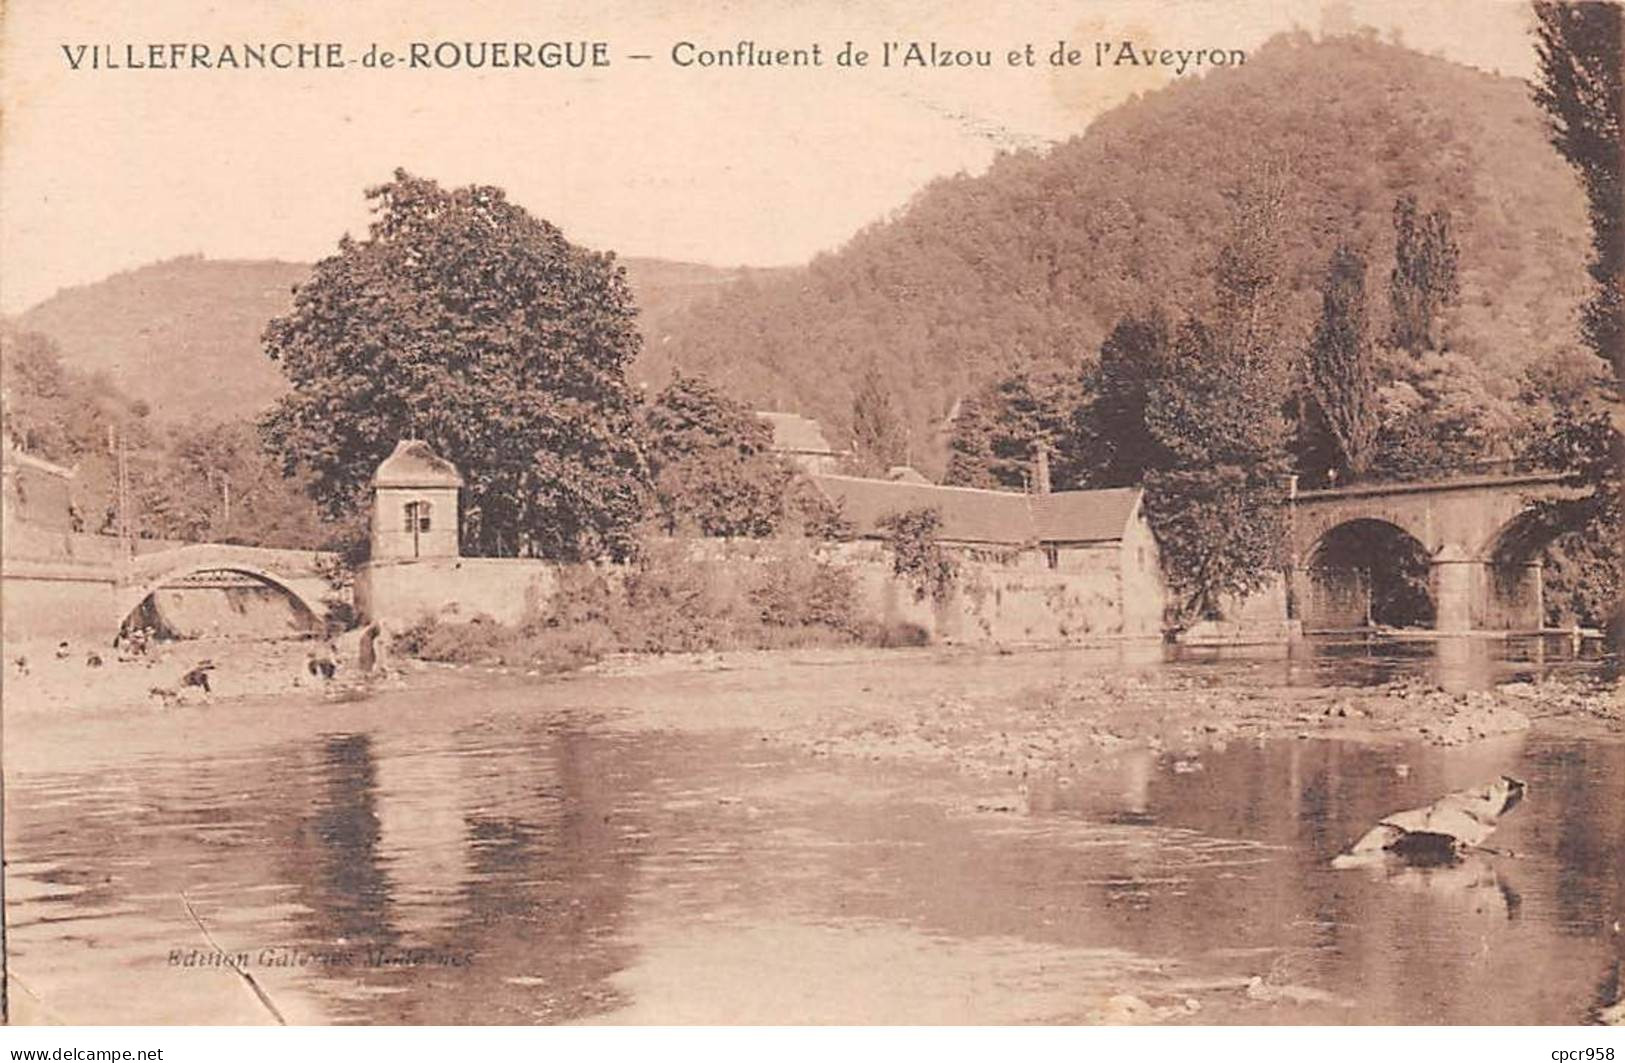 12 - VILLEFRANCHE DE ROUERGUE - SAN30260 - Confluent De L'Alzou Et De L'Aveyron - Villefranche De Rouergue